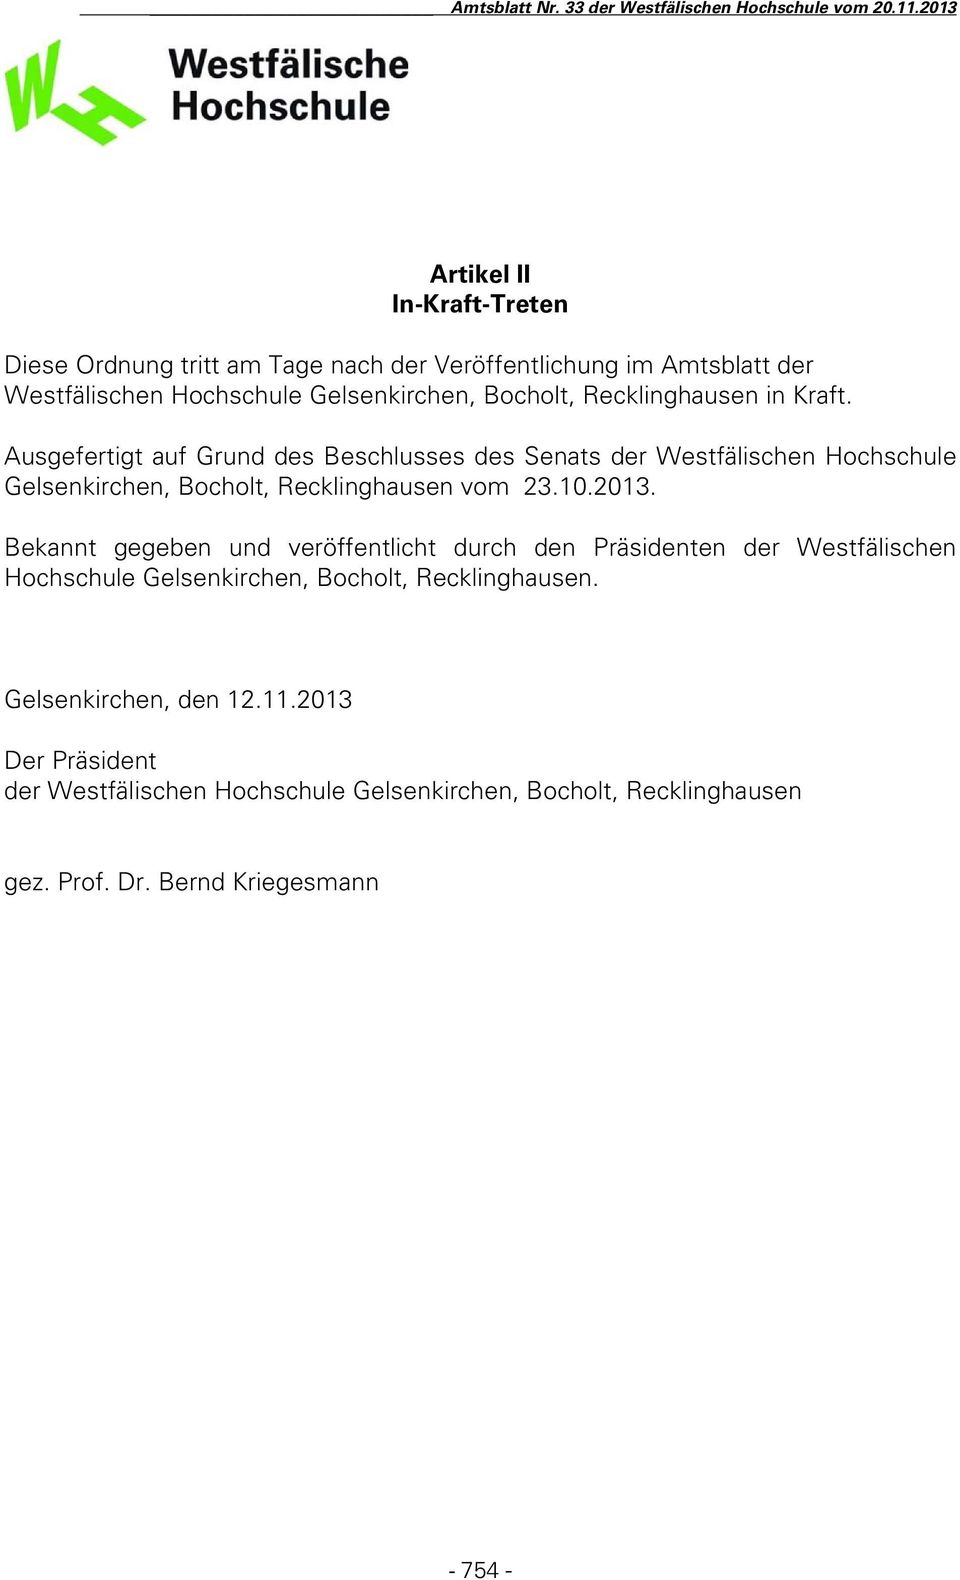 Ausgefertigt auf Grund des Beschlusses des Senats der Westfälischen Hochschule Gelsenkirchen, Bocholt, Recklinghausen vom 23.10.2013.